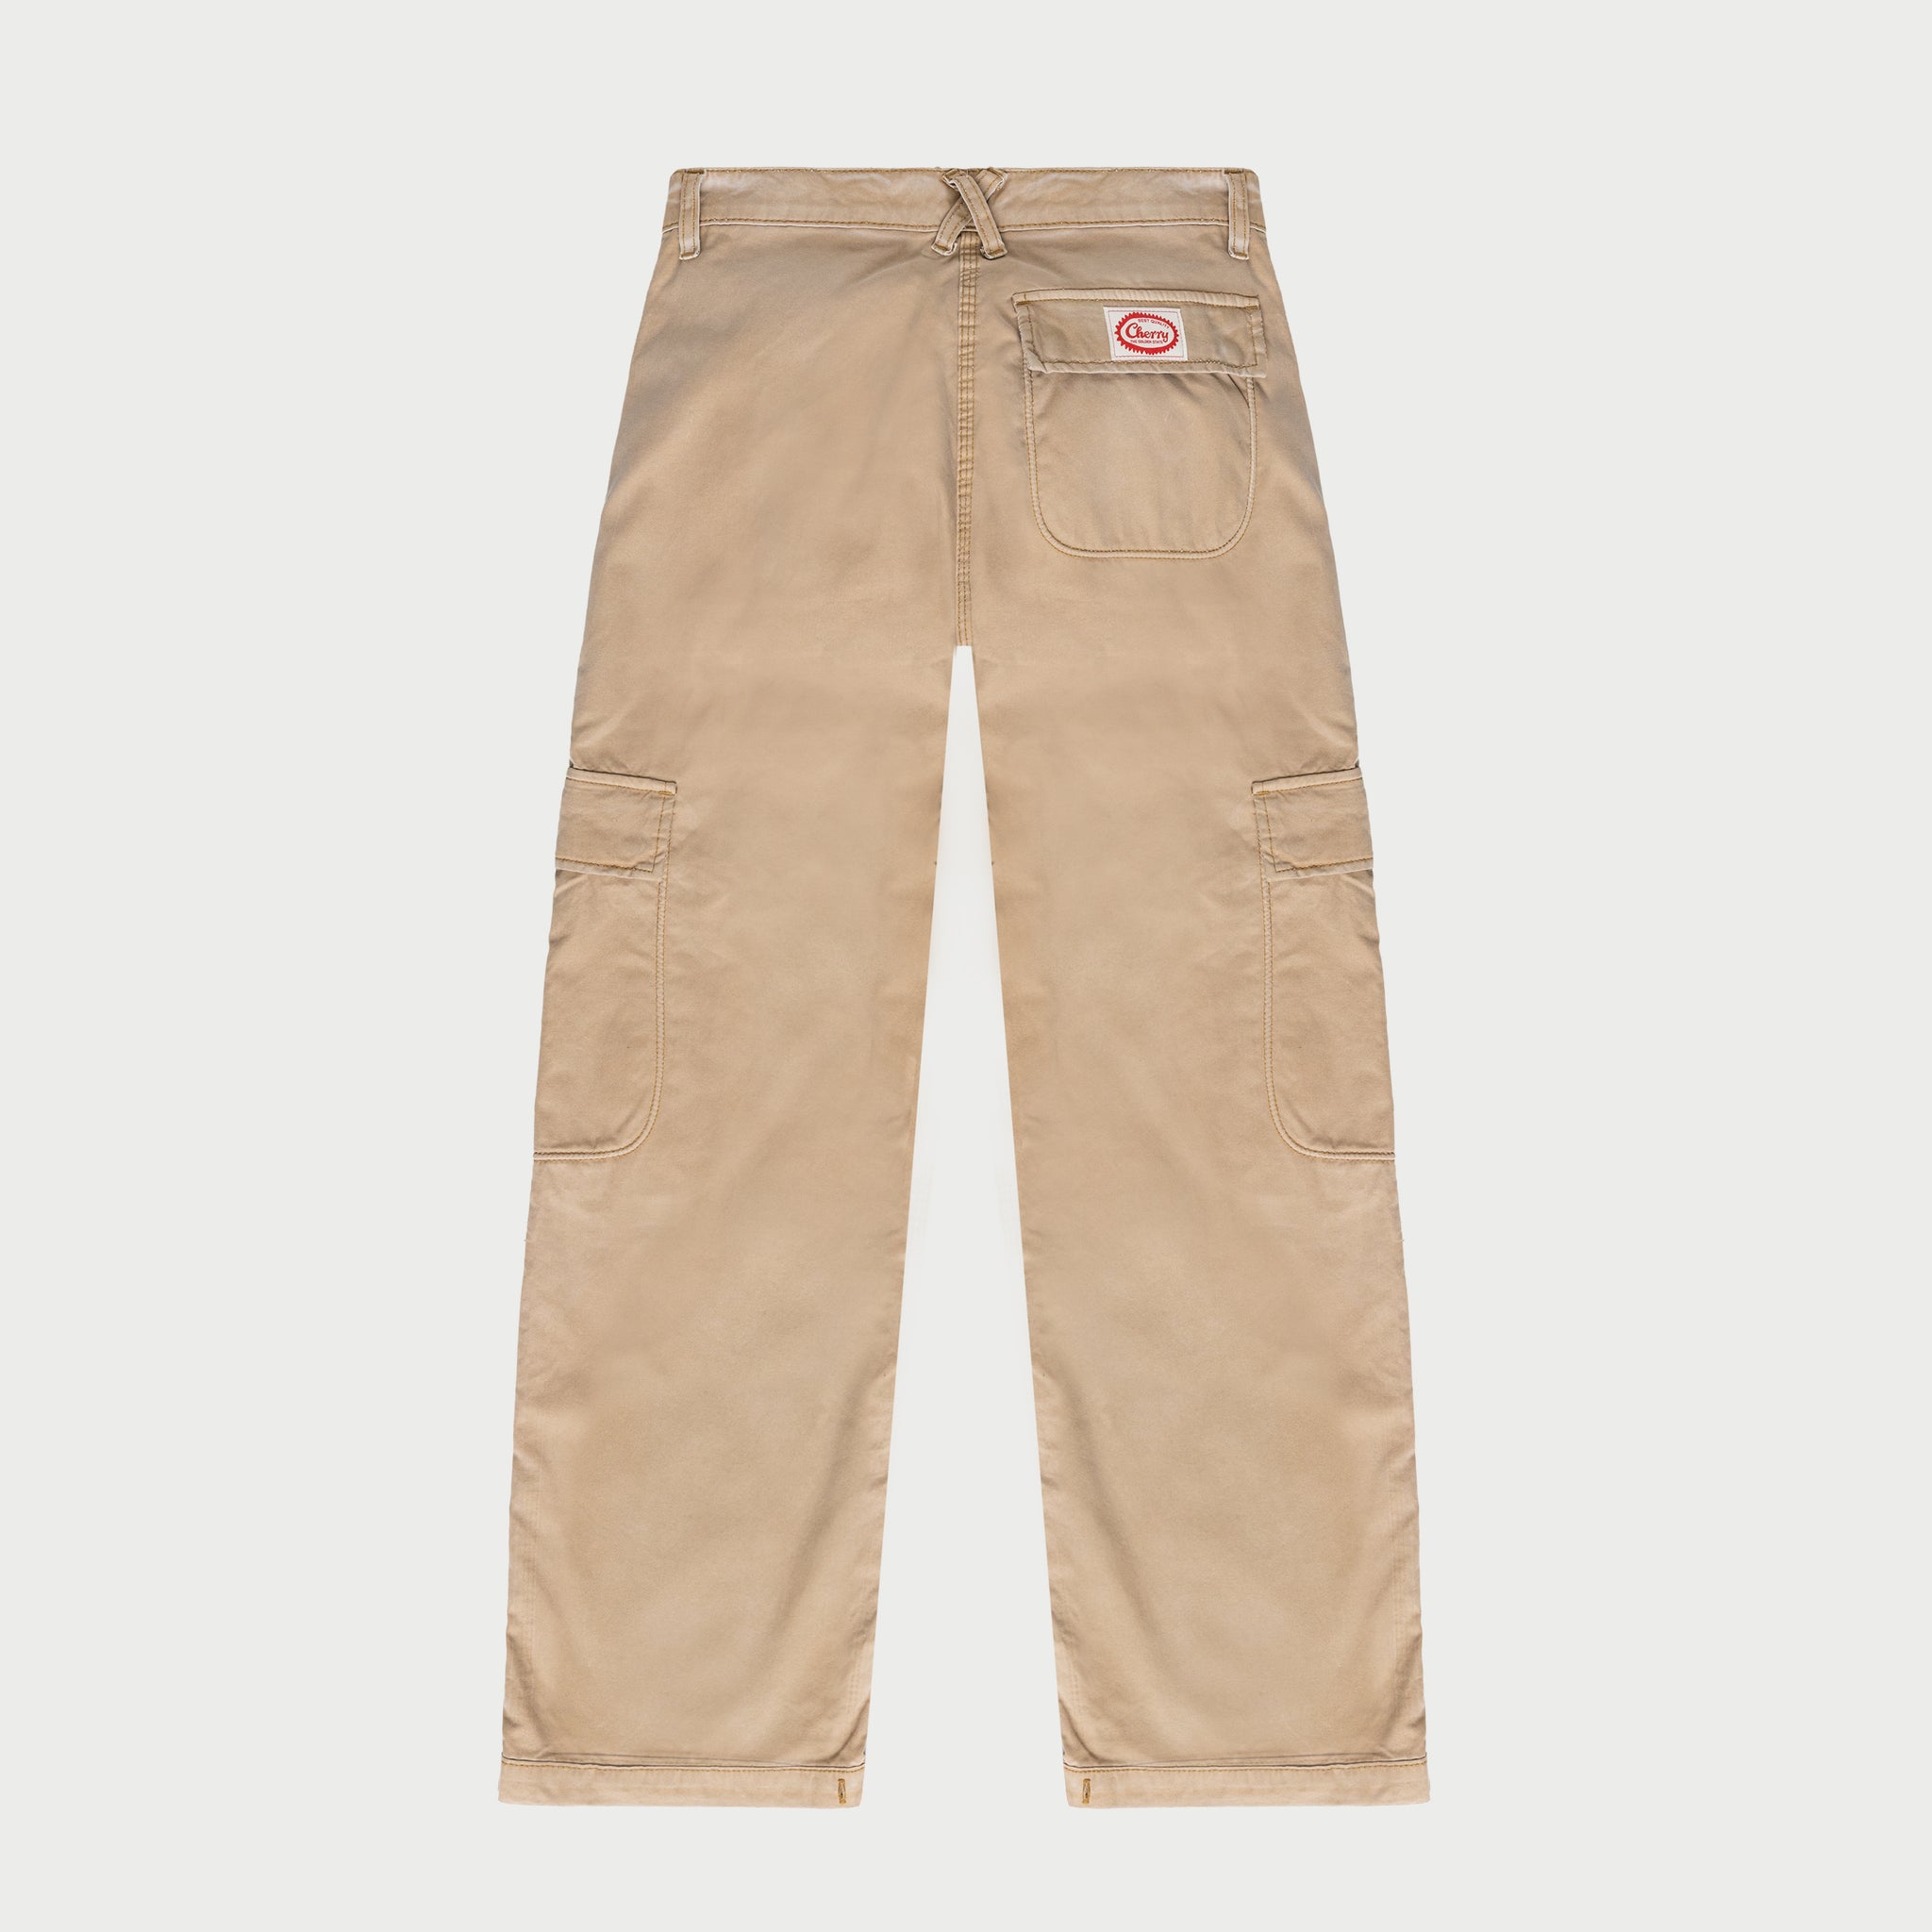 Men's STRUCTURE Cargo Pants SIZE 36